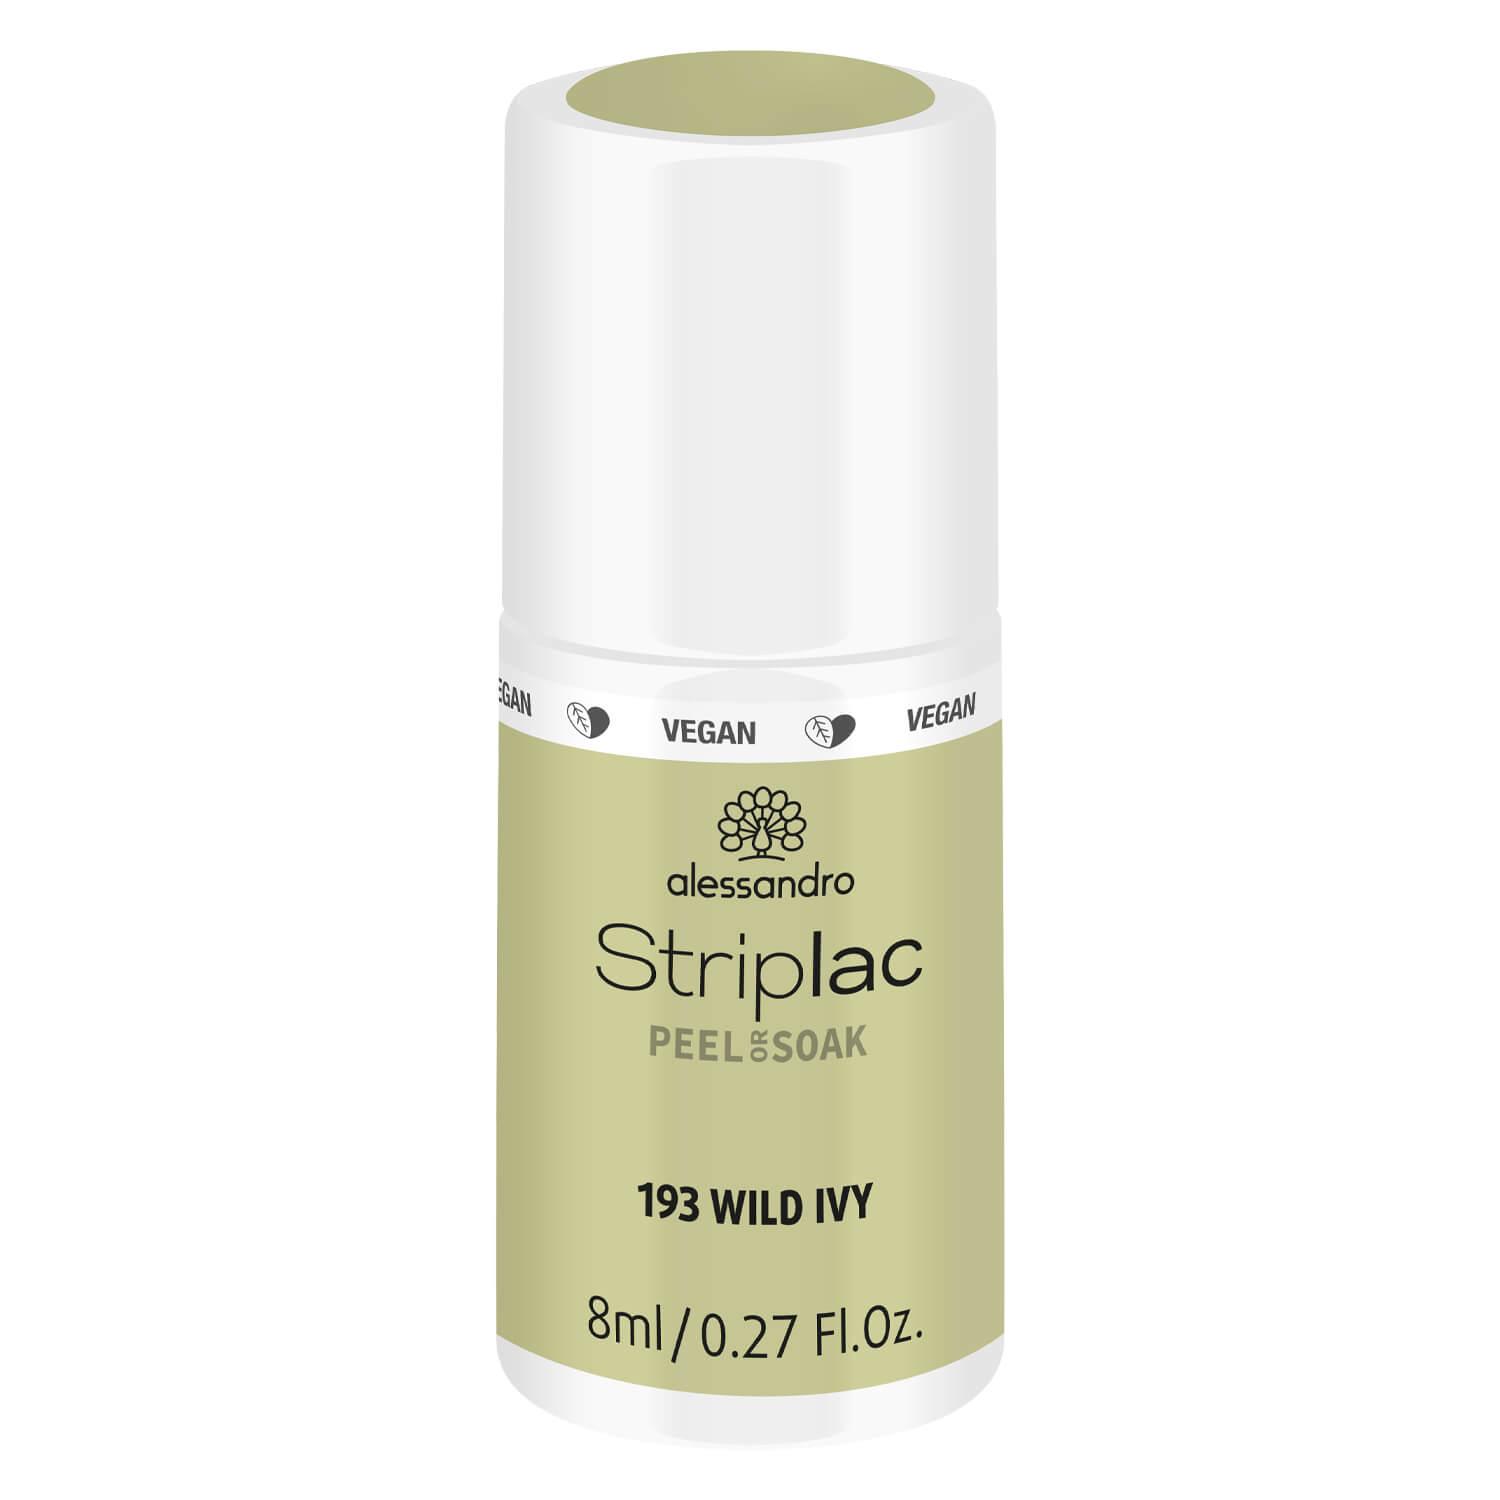 Striplac Peel or Soak - 193 Wild Ivy